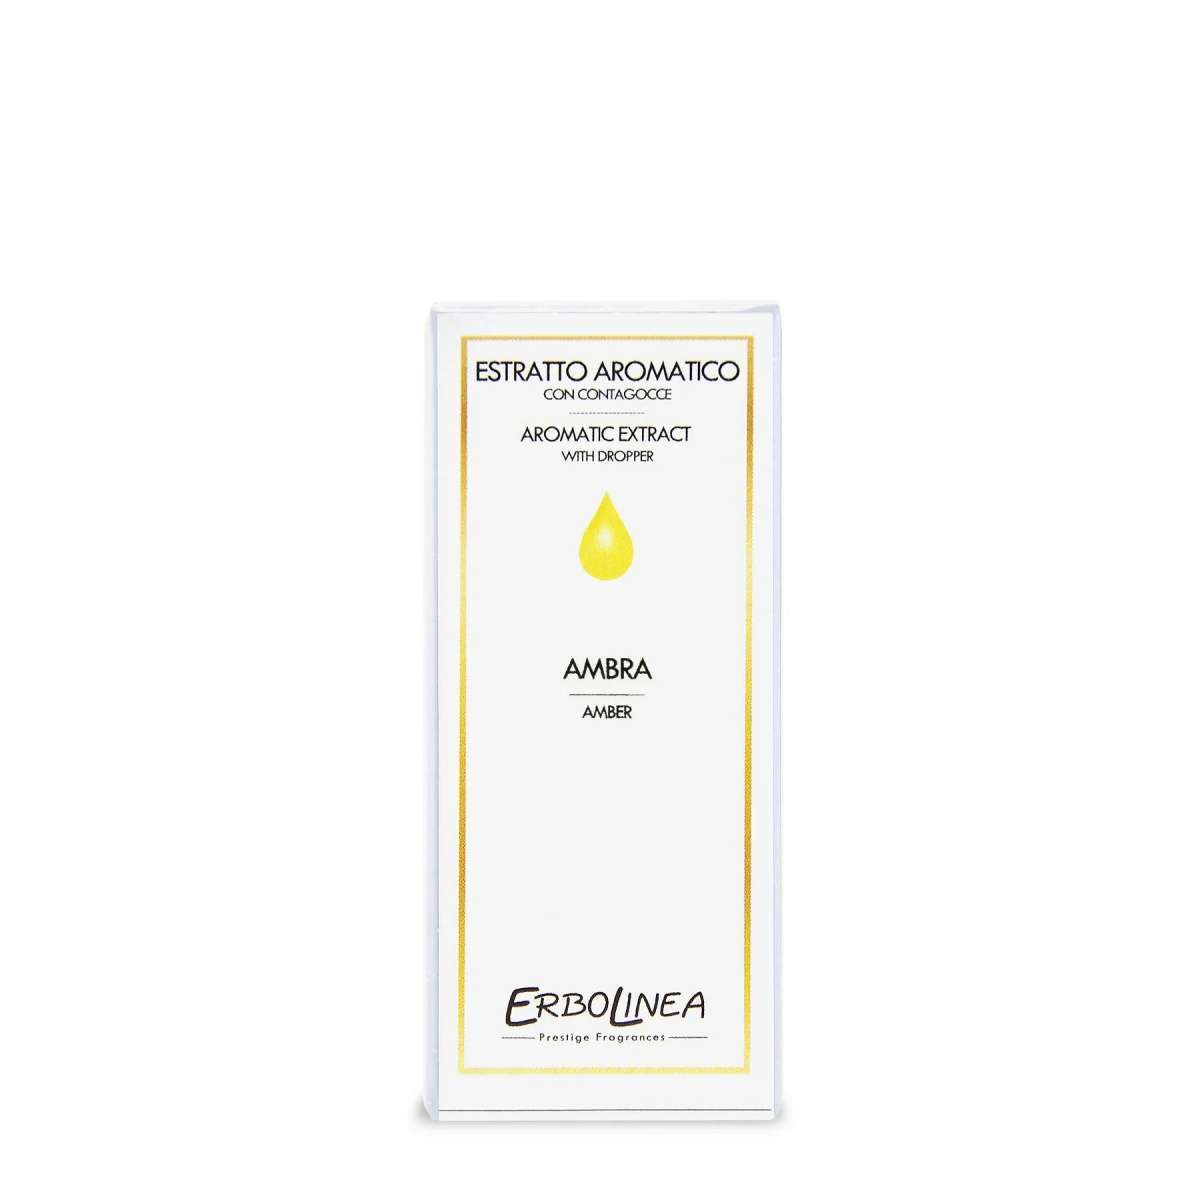 Immagine del prodotto Estratto Aromatico con Contagocce Ambra 10 ml | Erbolinea